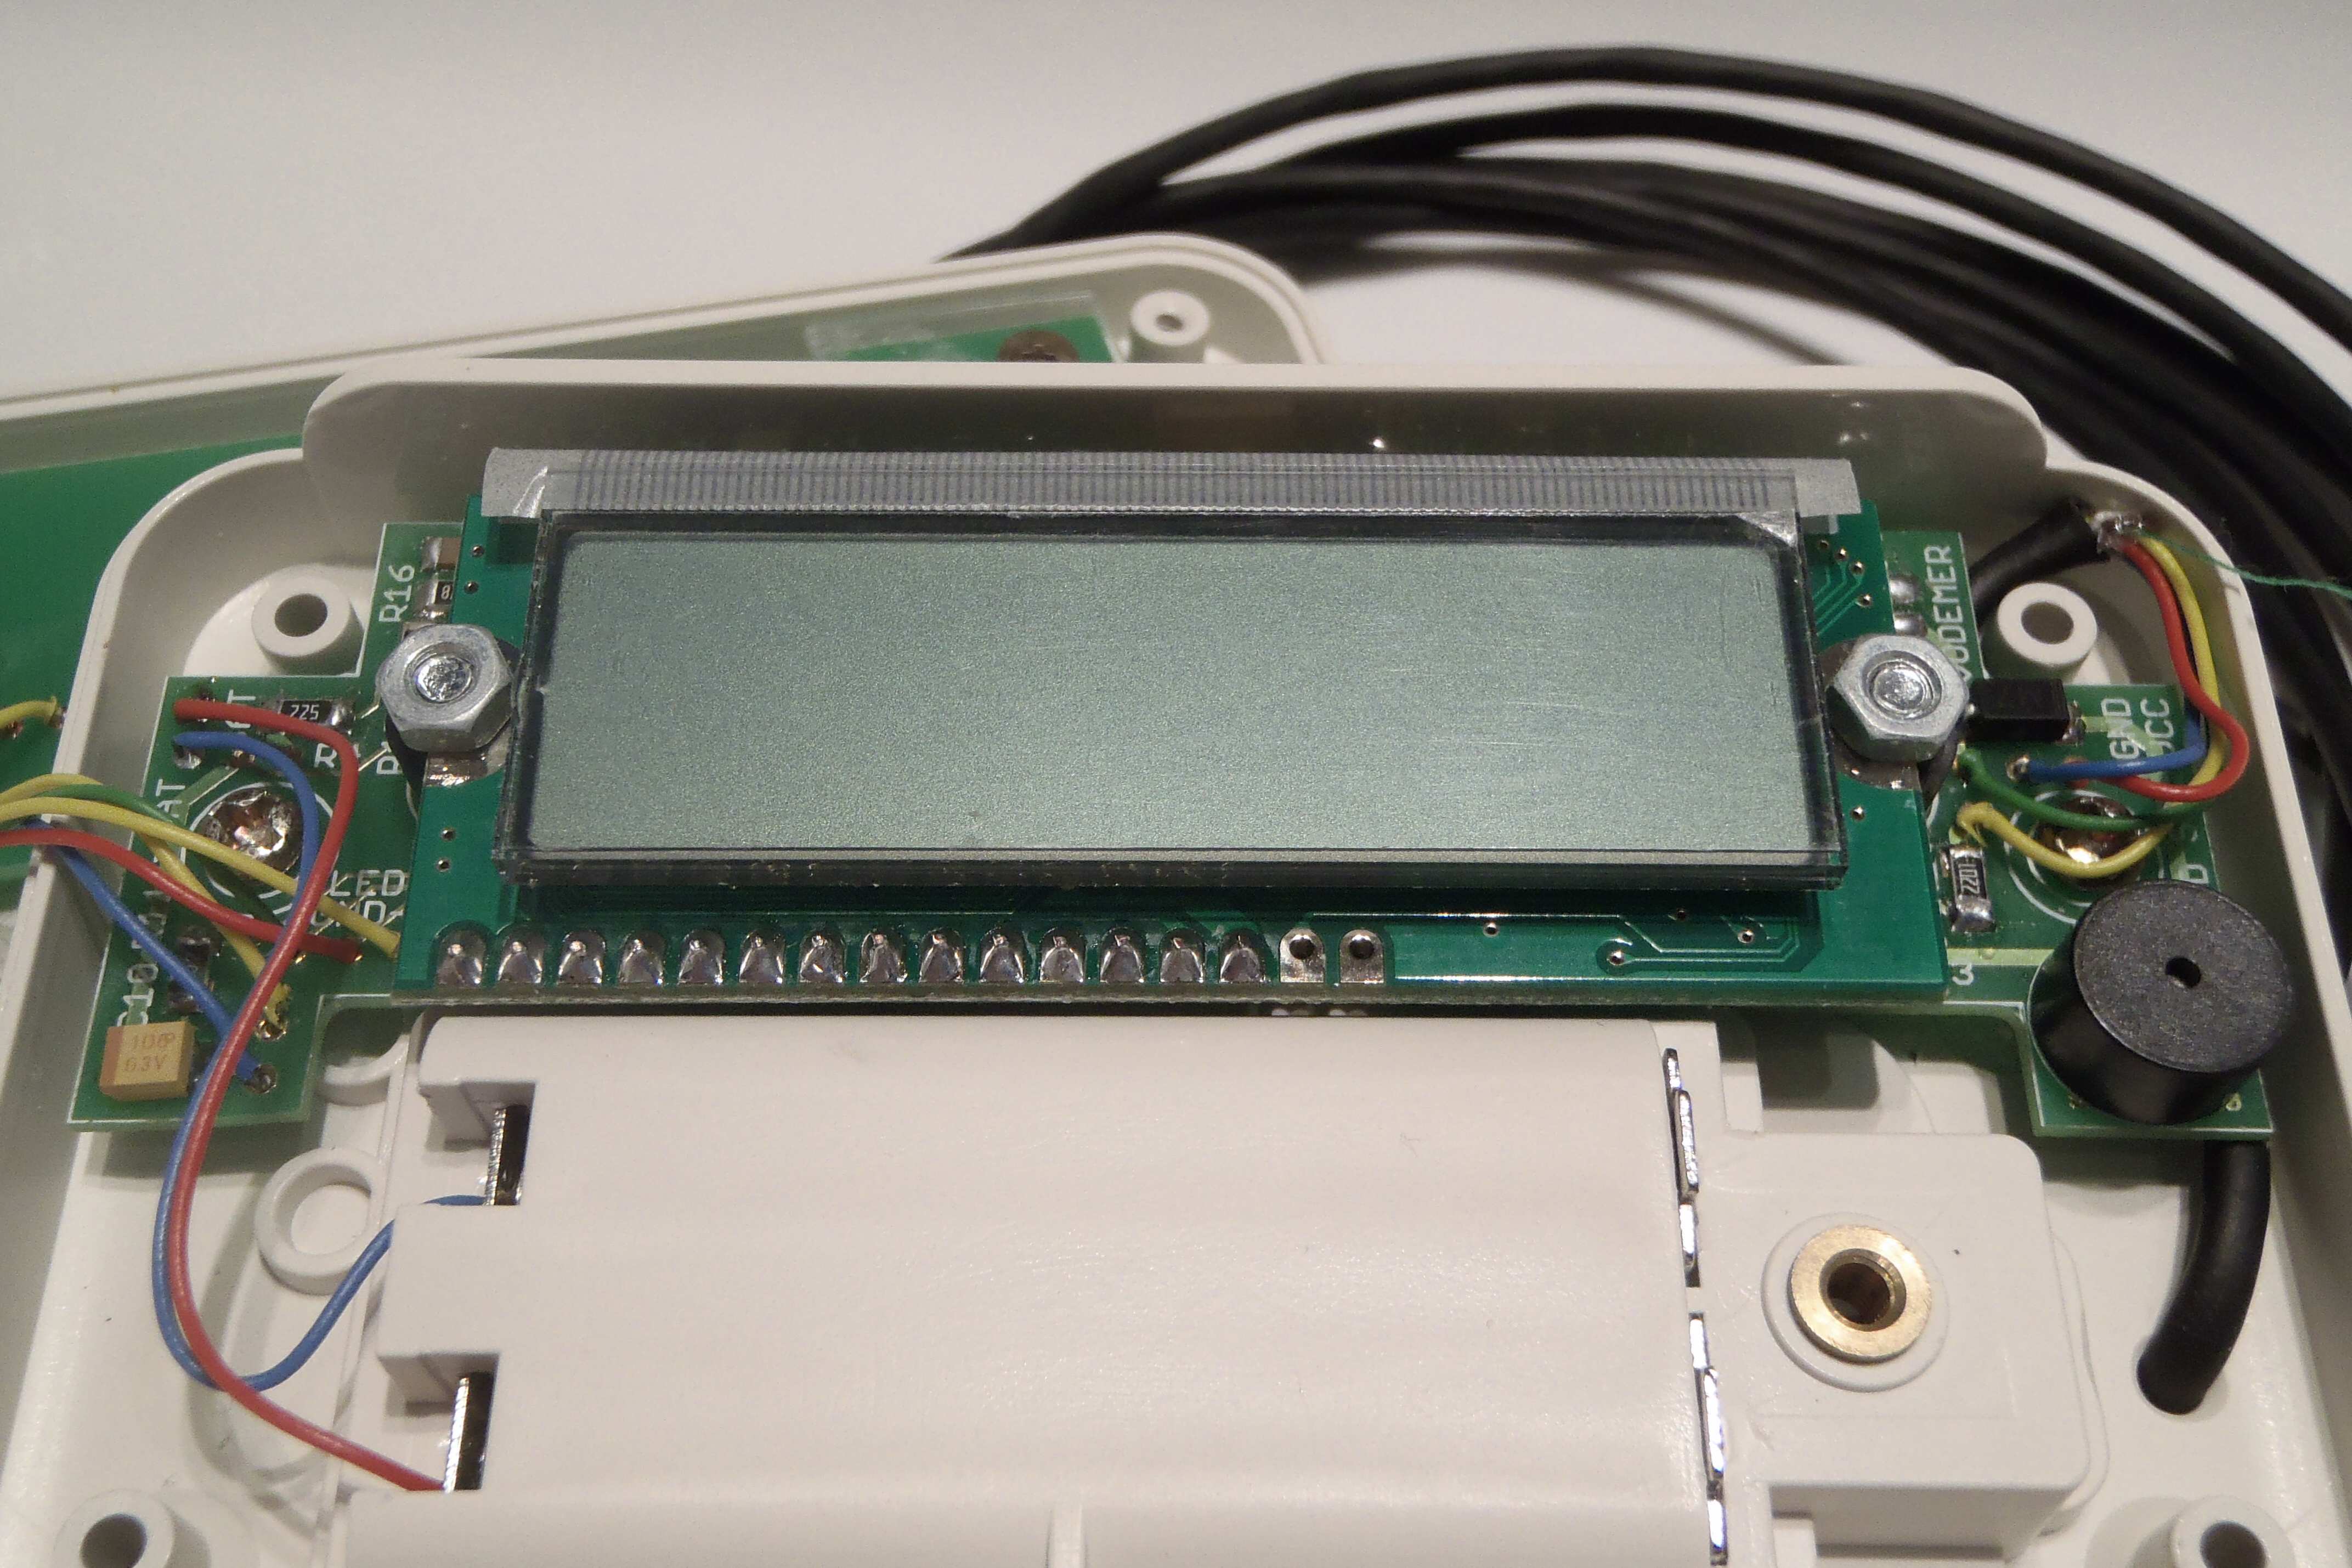 LCD zobrazovač je připevněn dvěmi šrouby M3x10 mm. Mezi LCD zobrazovačem a tištěným spojem je vložen distanční sloupek výšky 5 mm.